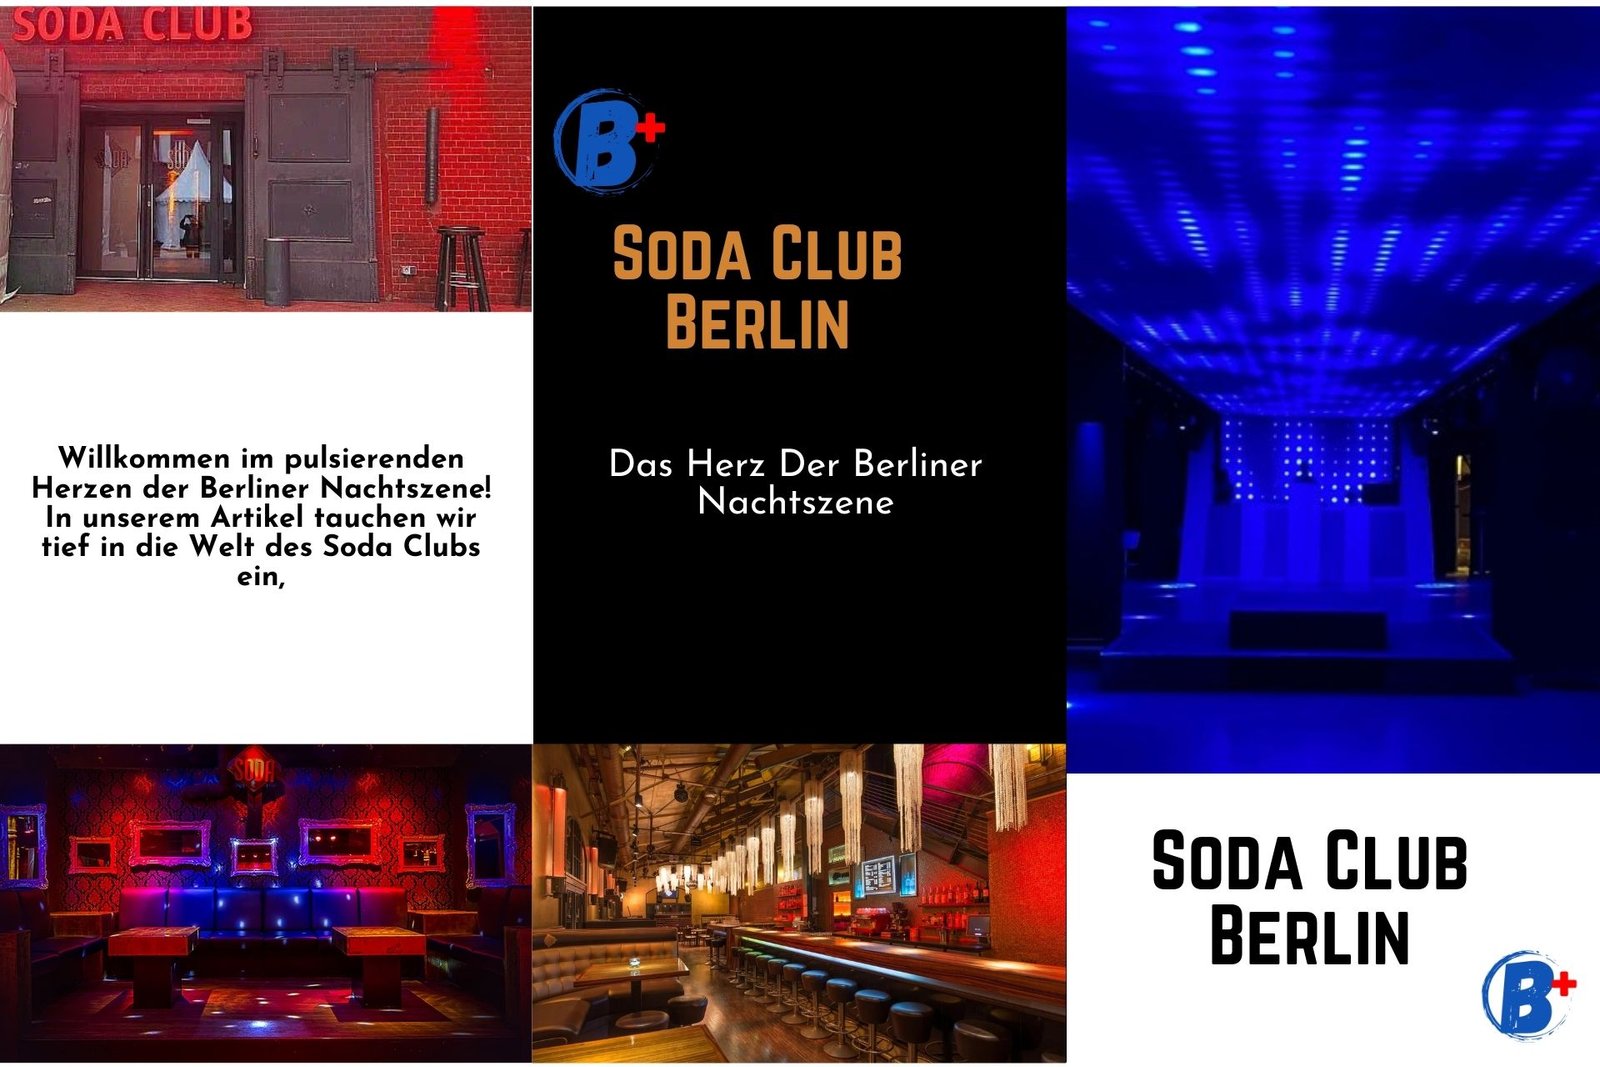 Soda Club Berlin